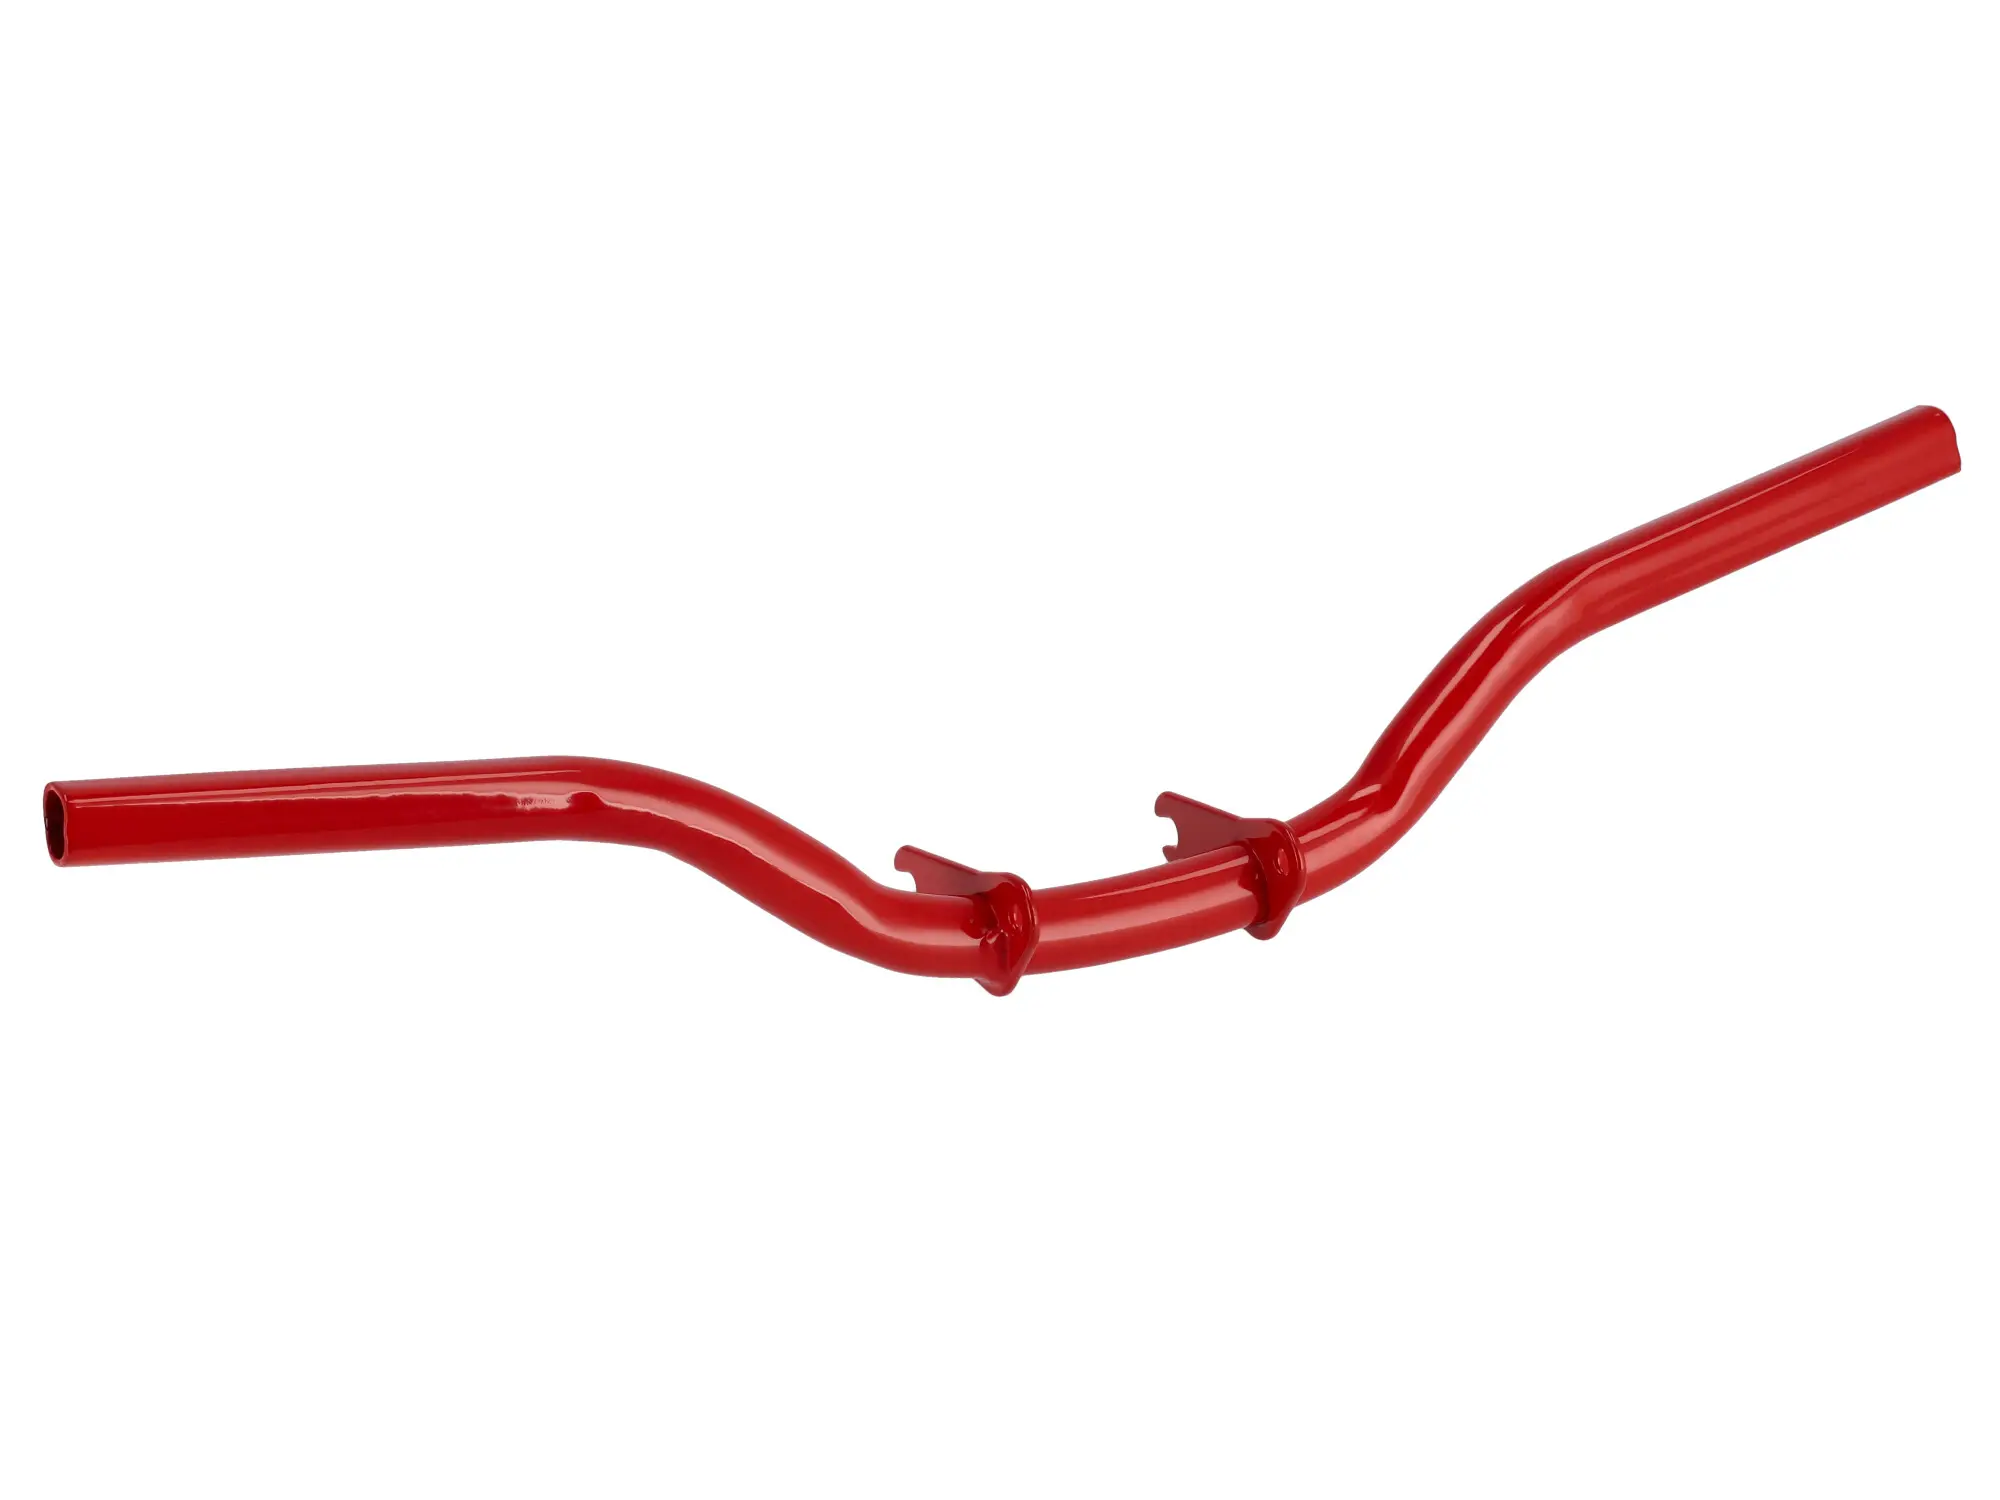 Fußrastenträger Enduro, rechts verlängert, grundiert + Rot beschichtet - Simson S50, S51, S70, Item no: 10075899 - Image 1